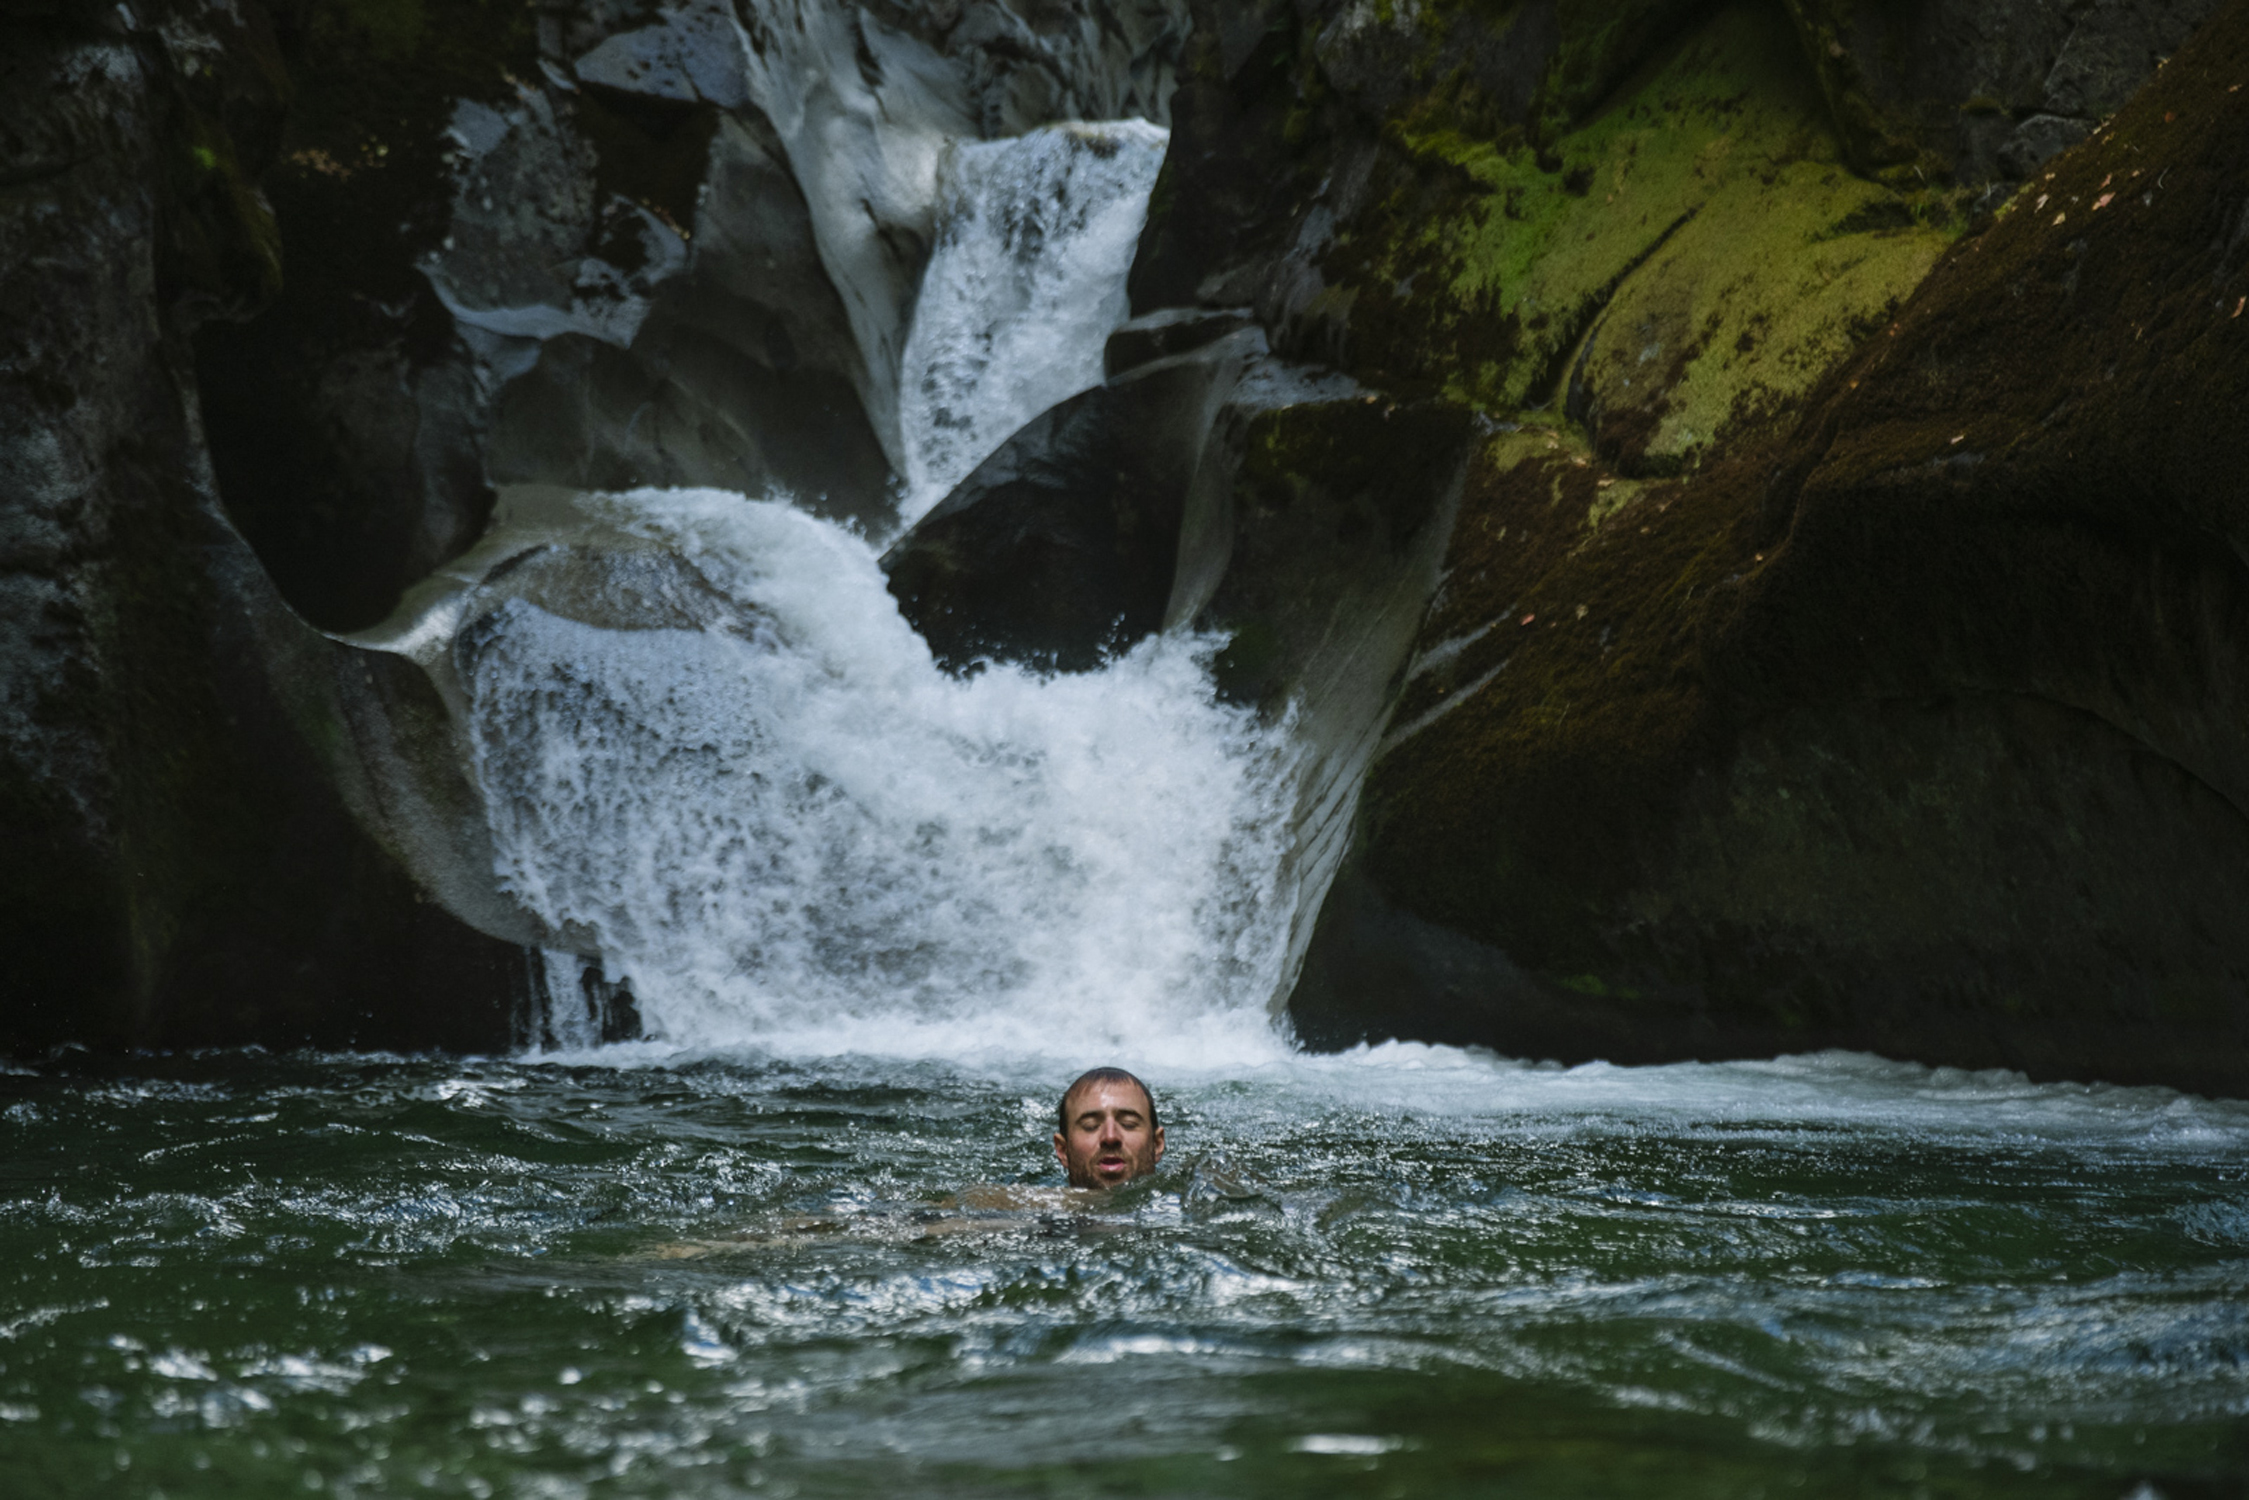 Kurt Sorge fa un bagno nel fiume per rinfrescarsi